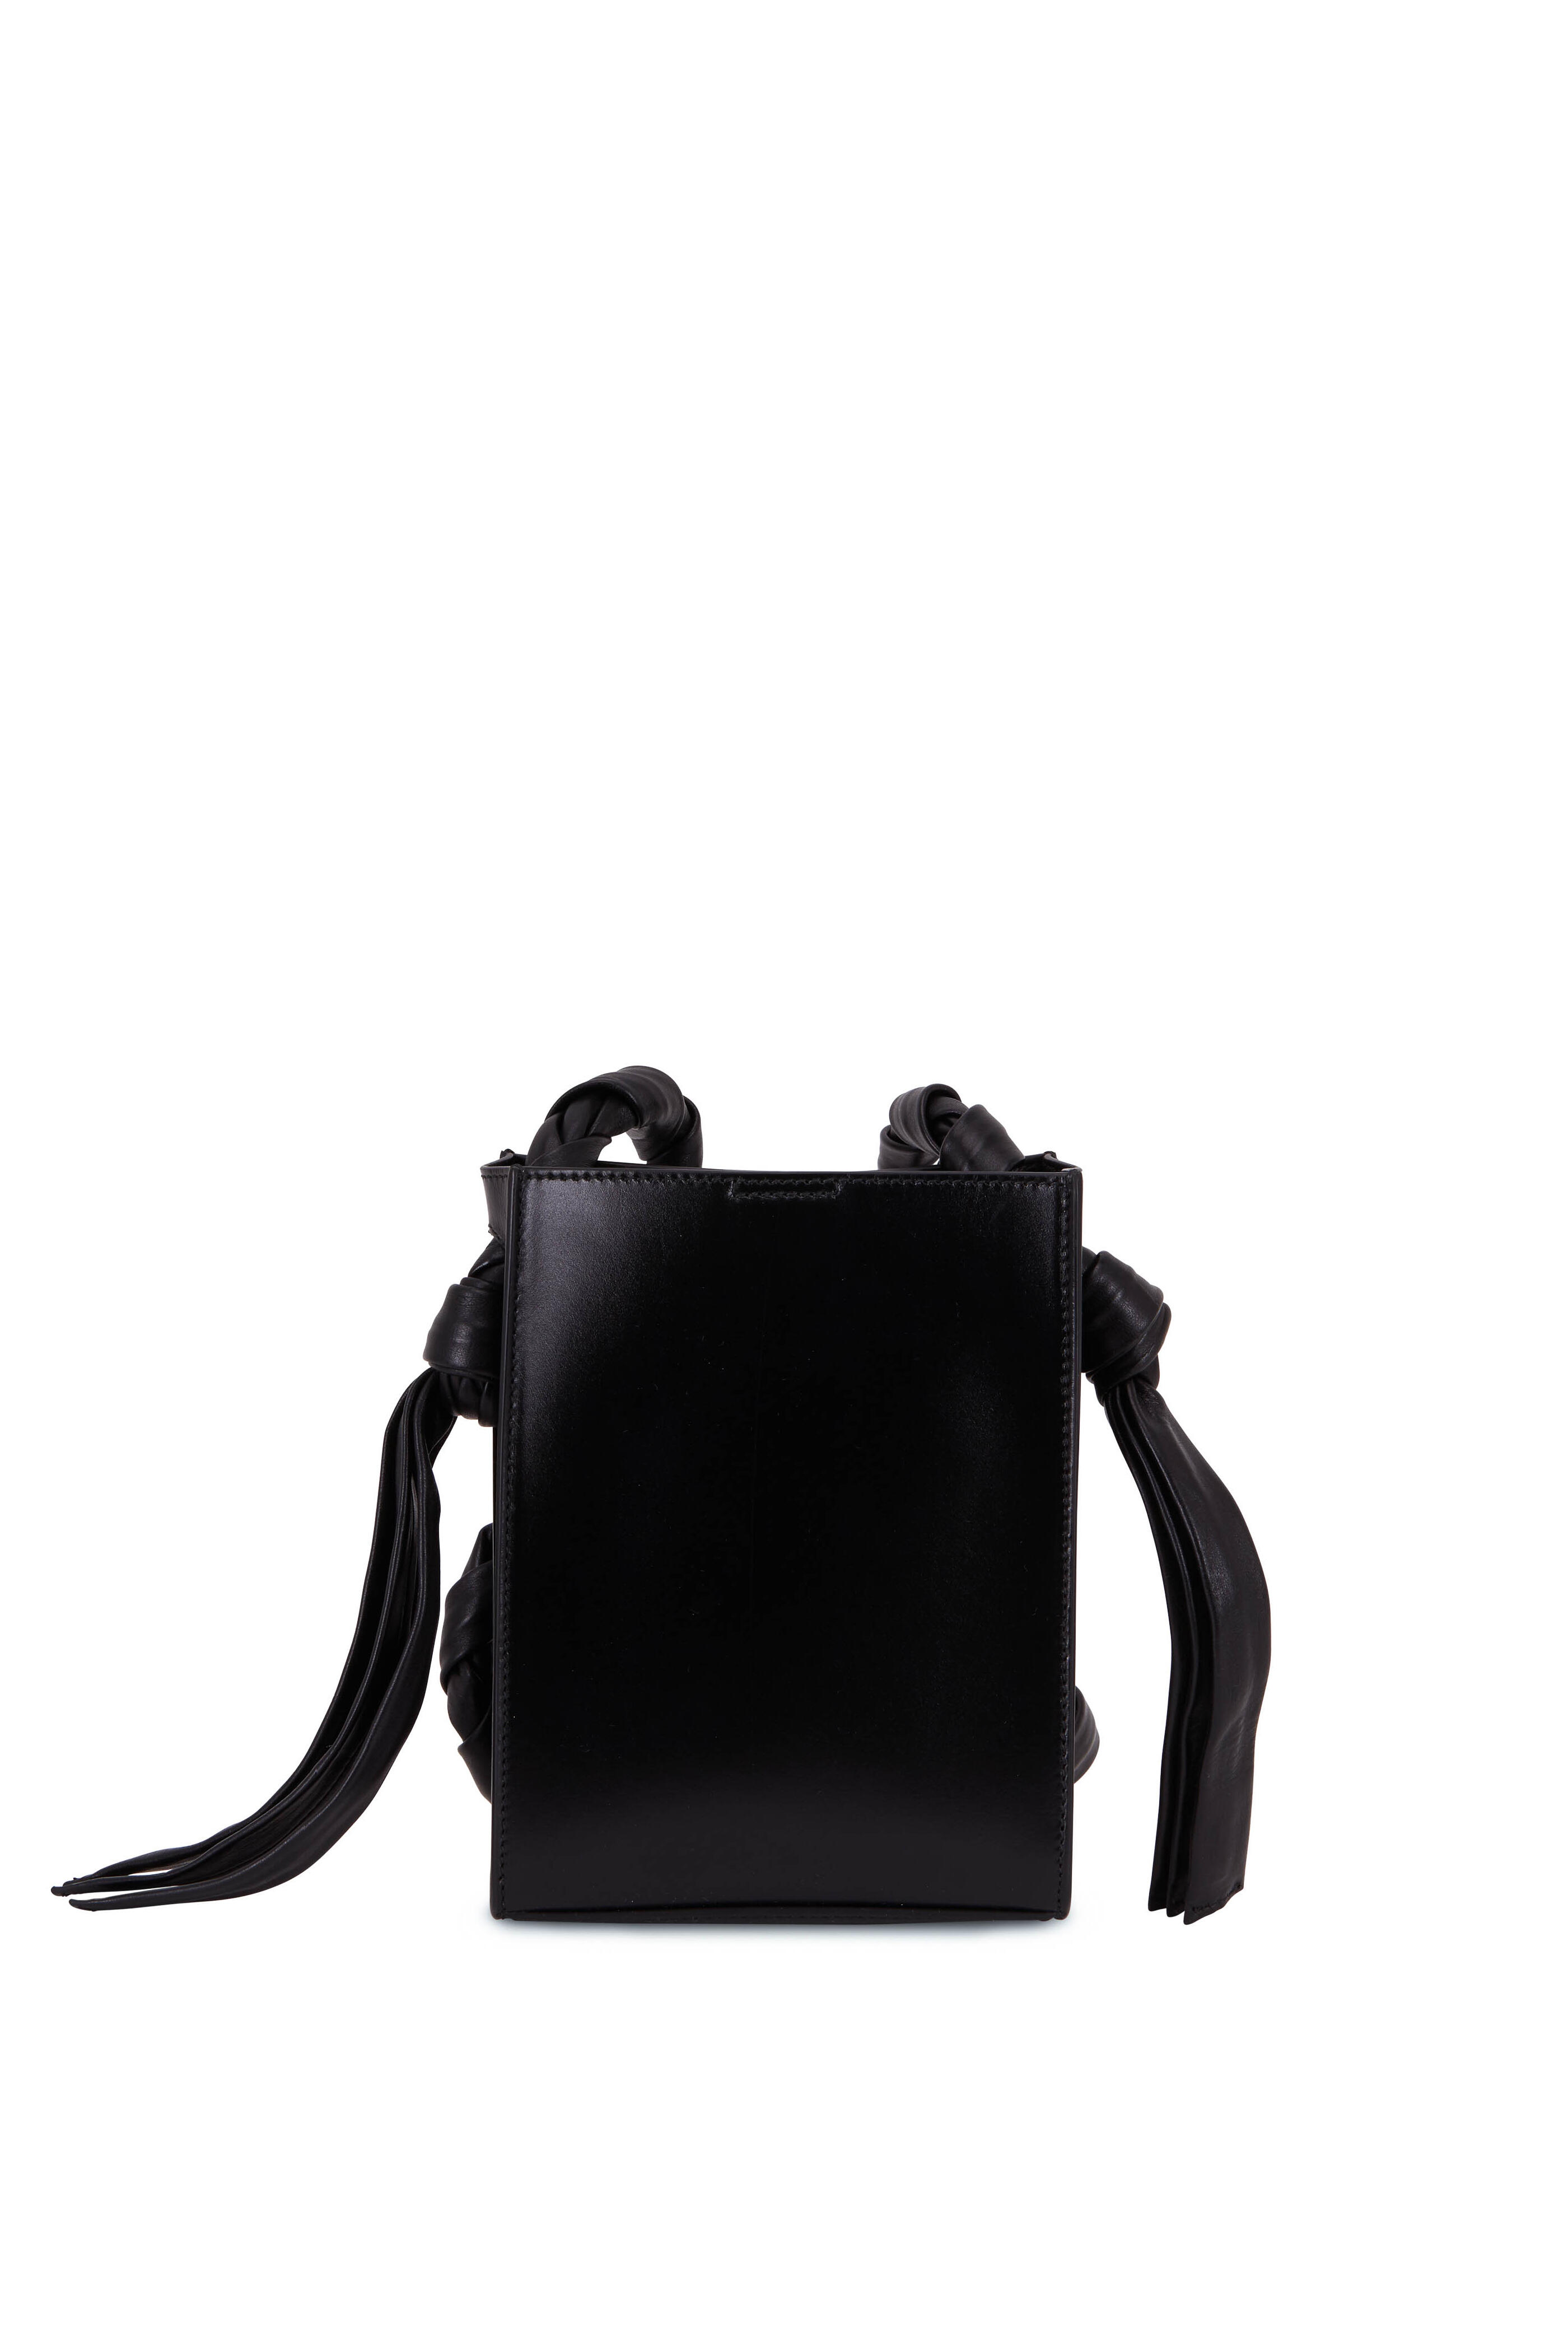 Jil Sander braided strap-detail shoulder bag - Black